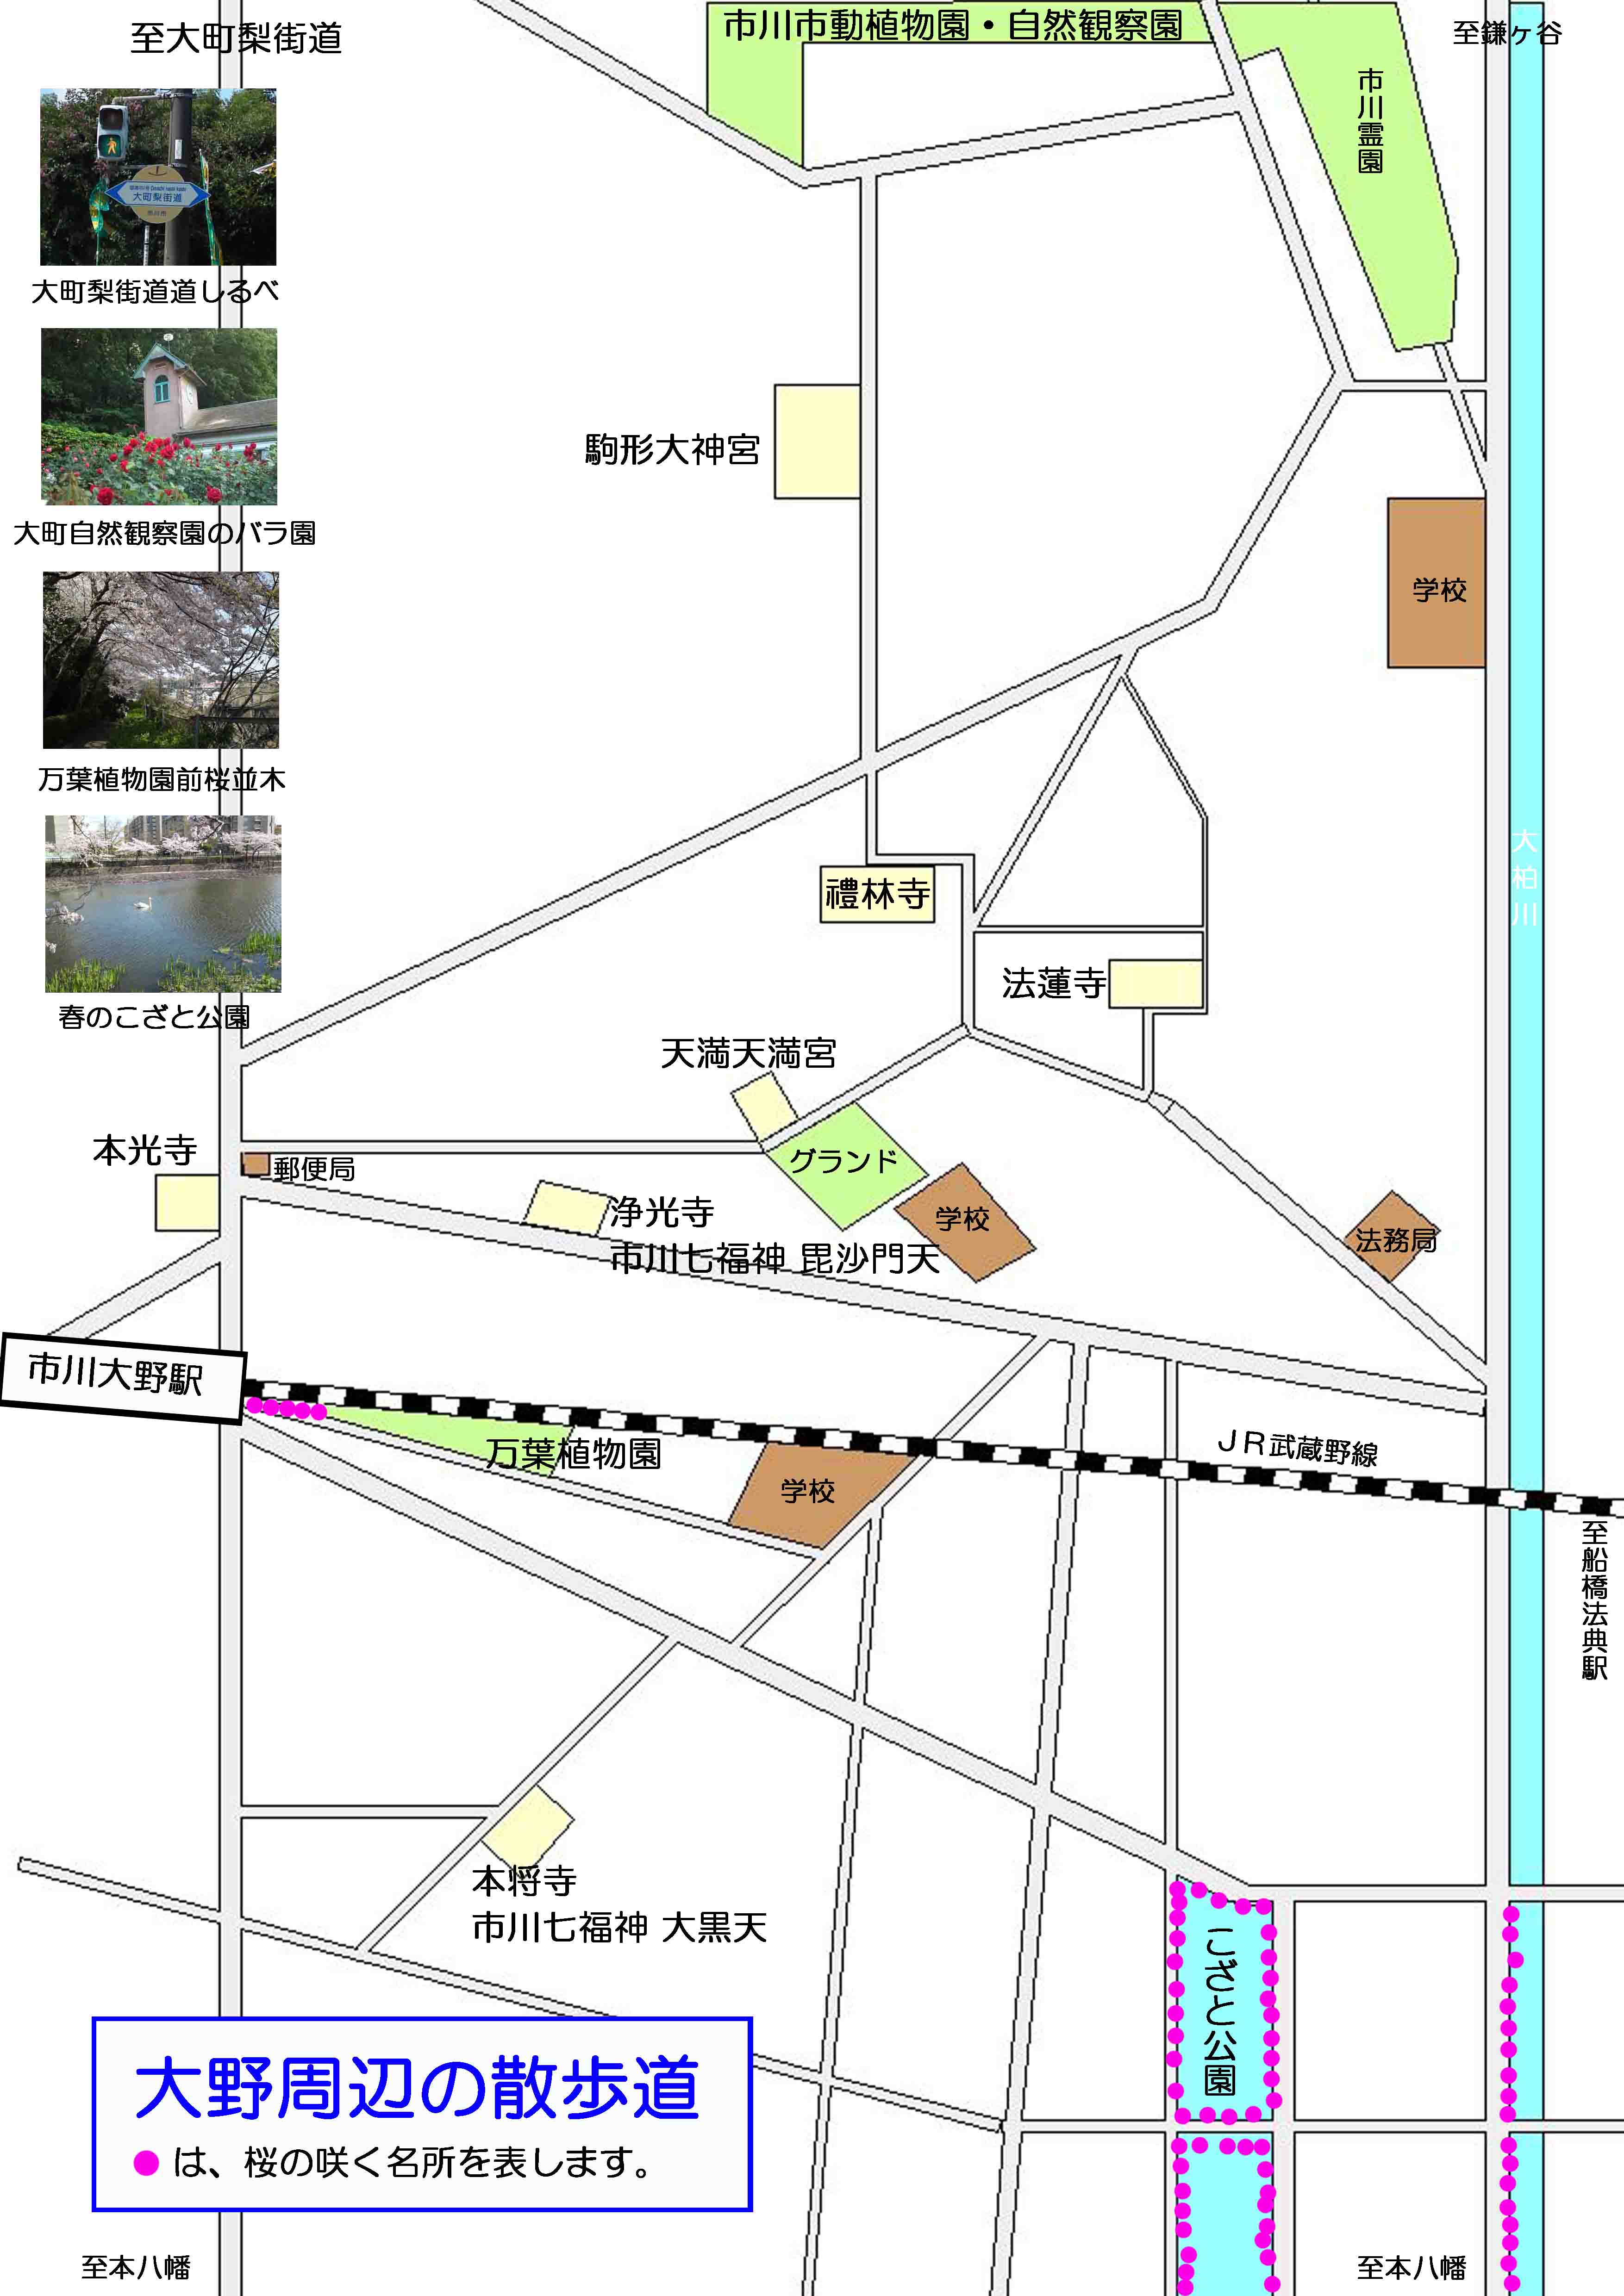 駒形大神社周辺の案内図